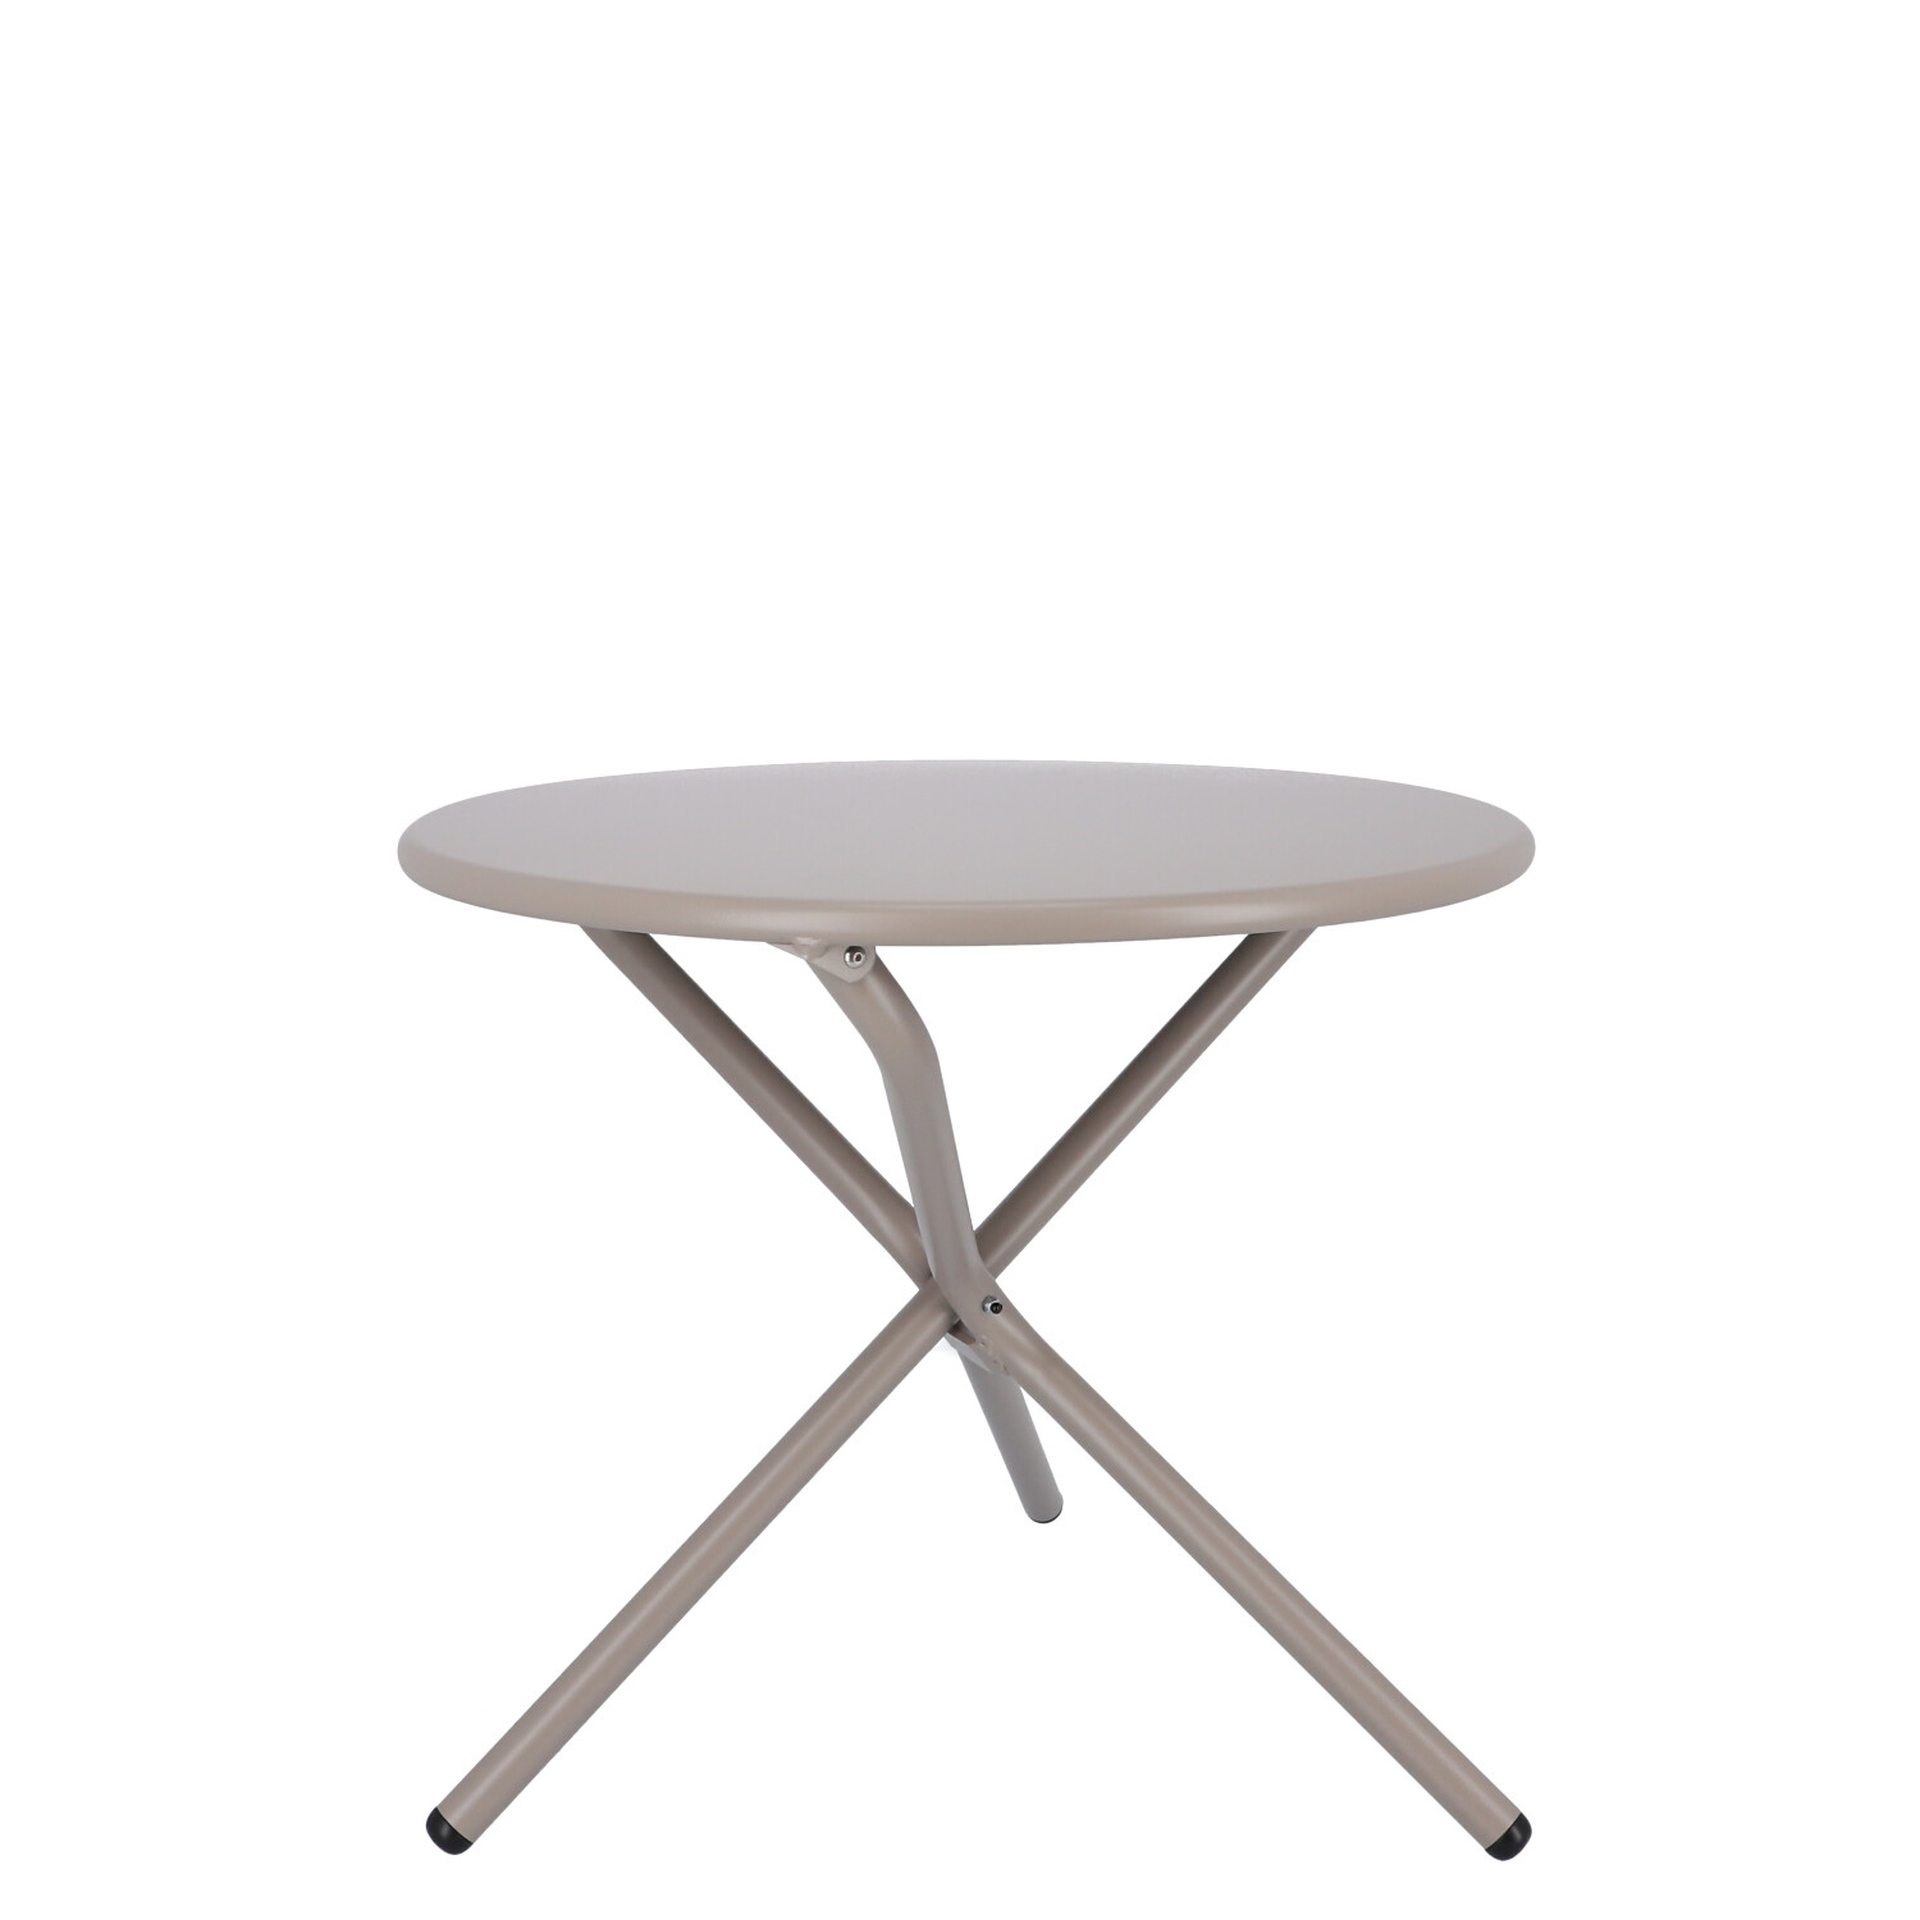 Der Beistelltisch Tris wurde aus Aluminium gefertigt und ist daher auch für den Outdoor Bereich einsetzbar. Designet wurde der Tisch von der Marke Jan Kurtz. Dieser Tisch hat die Farbe Taupe.